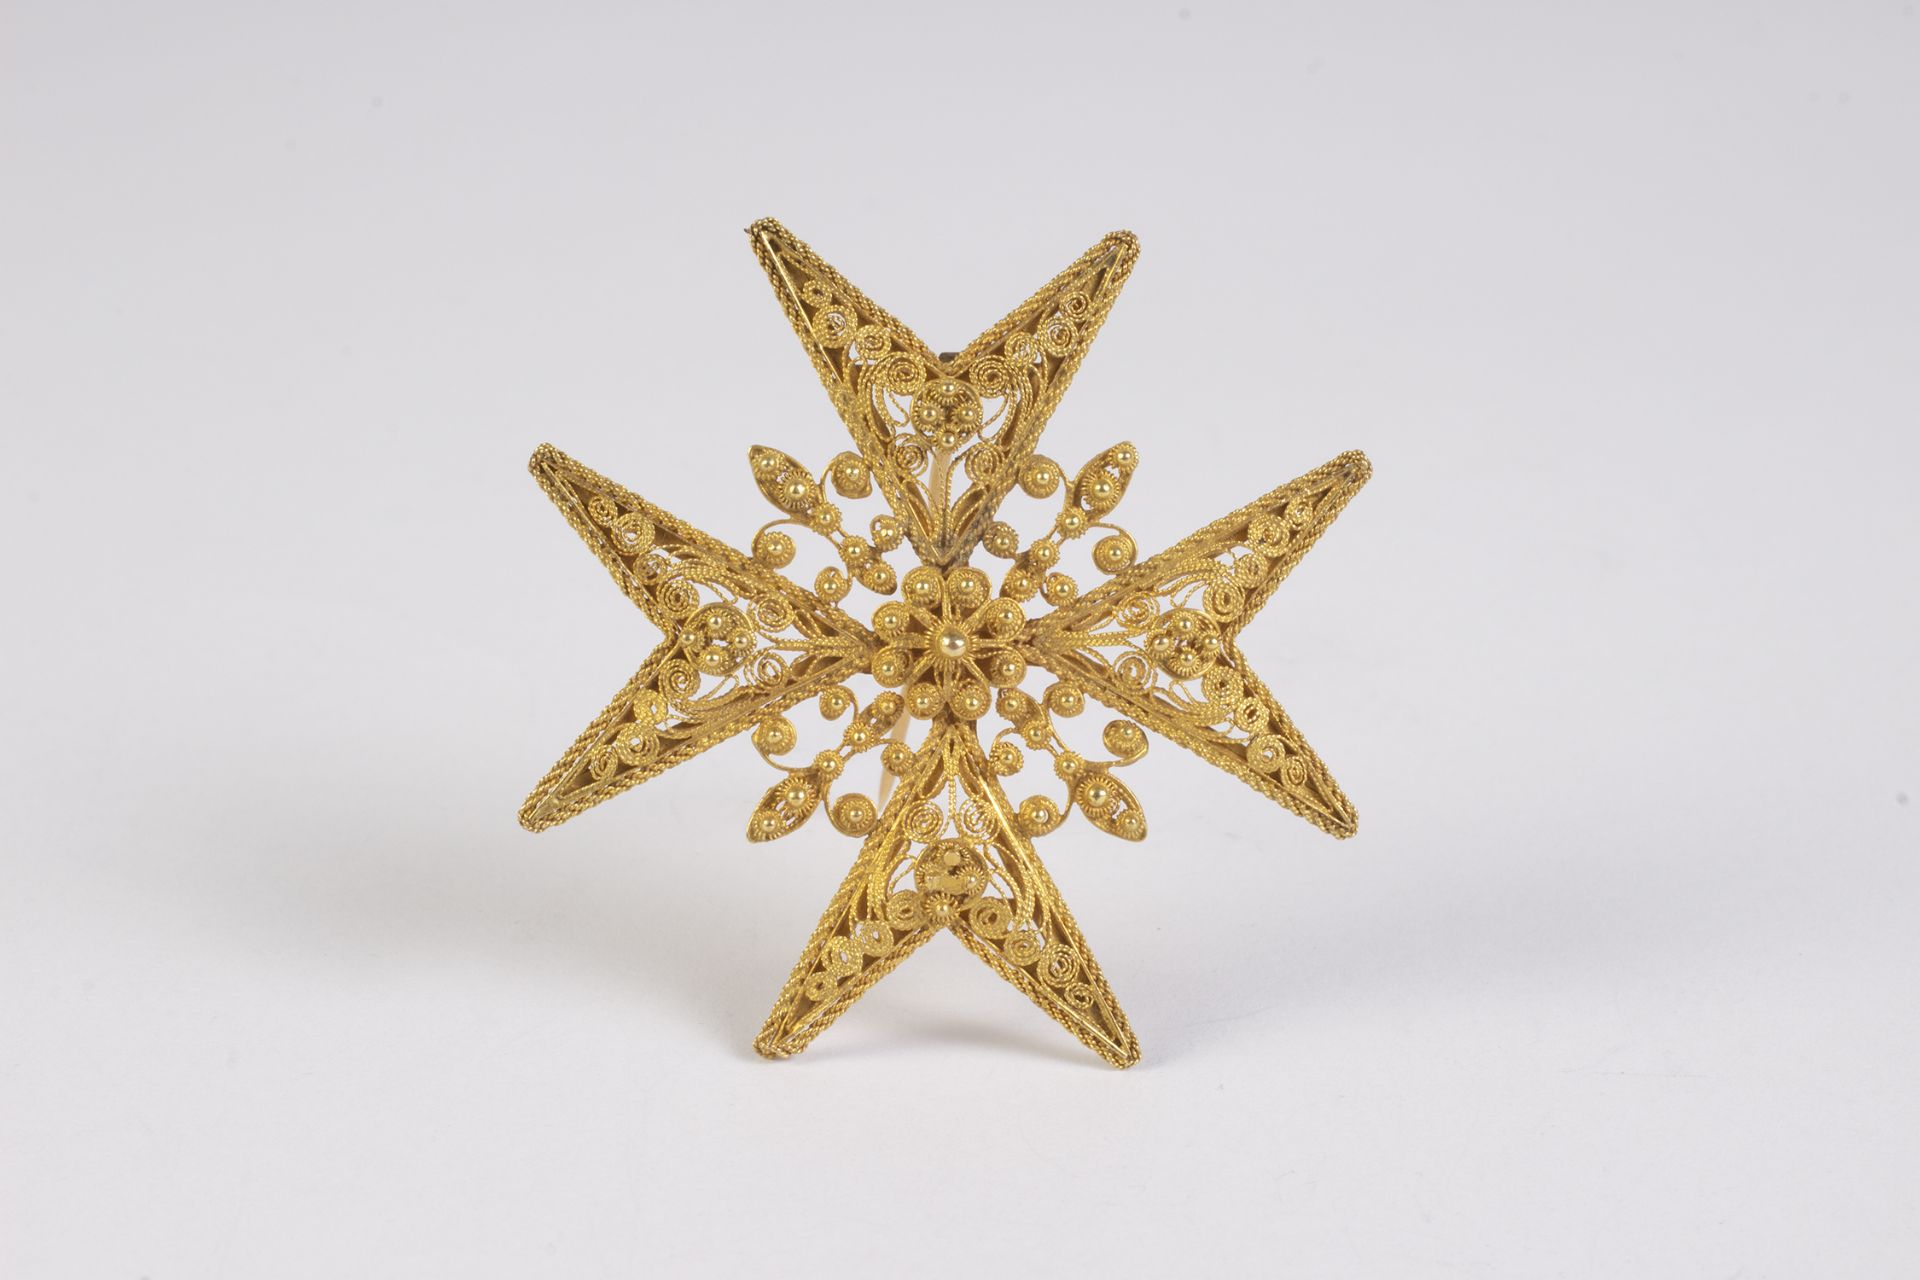 Broche en forma de cruz de Malta con corona en filigrana de oro.